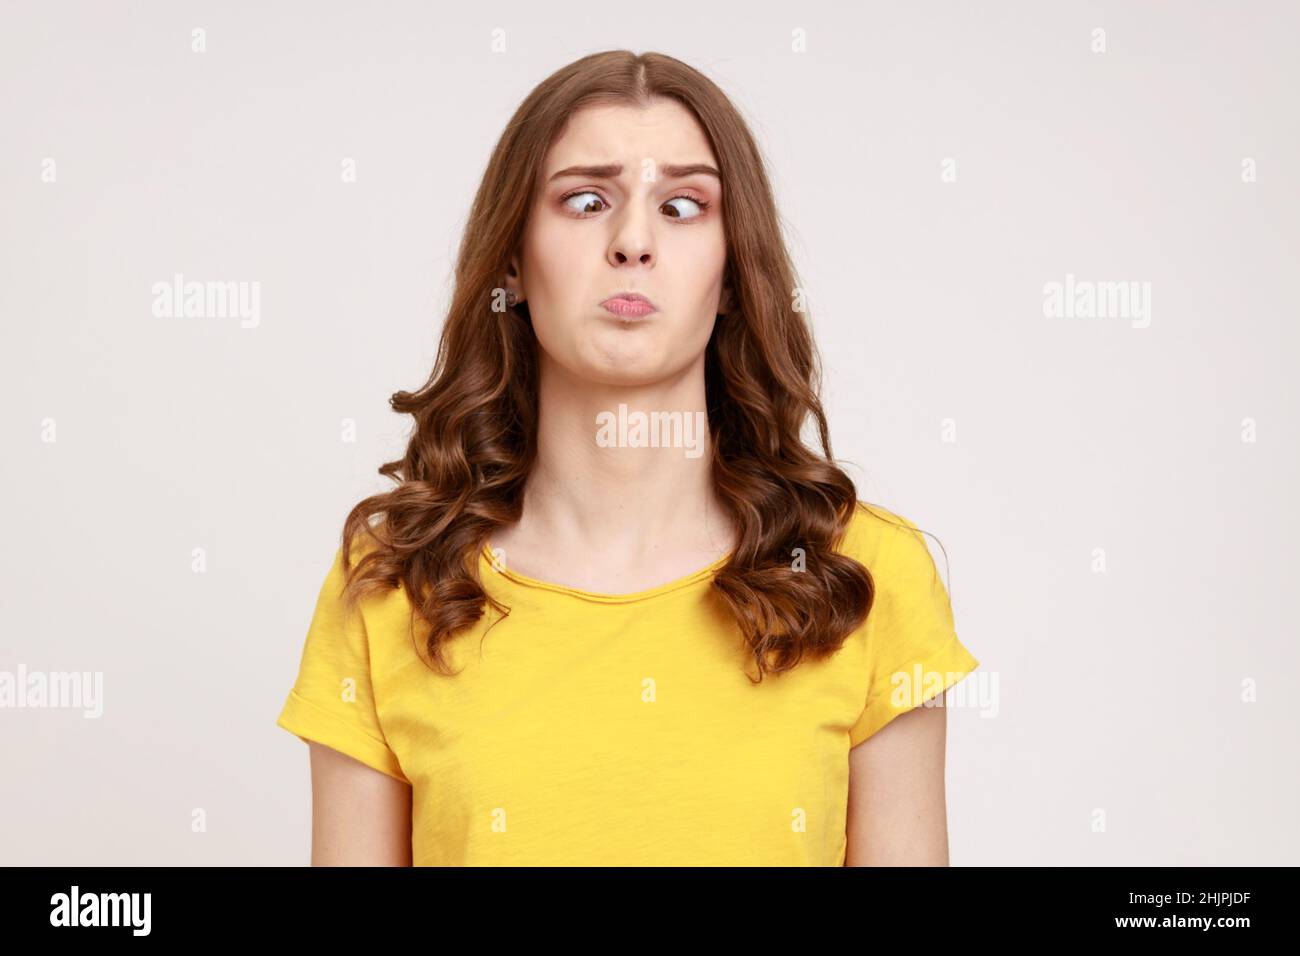 Porträt von attraktiven lustig dumm junge Frau in gelben T-Shirt mit Kreuzaugen, hat dummes stummes Gesicht, umständlich verwirrt komischen Ausdruck. Innenaufnahme des Studios isoliert auf grauem Hintergrund. Stockfoto